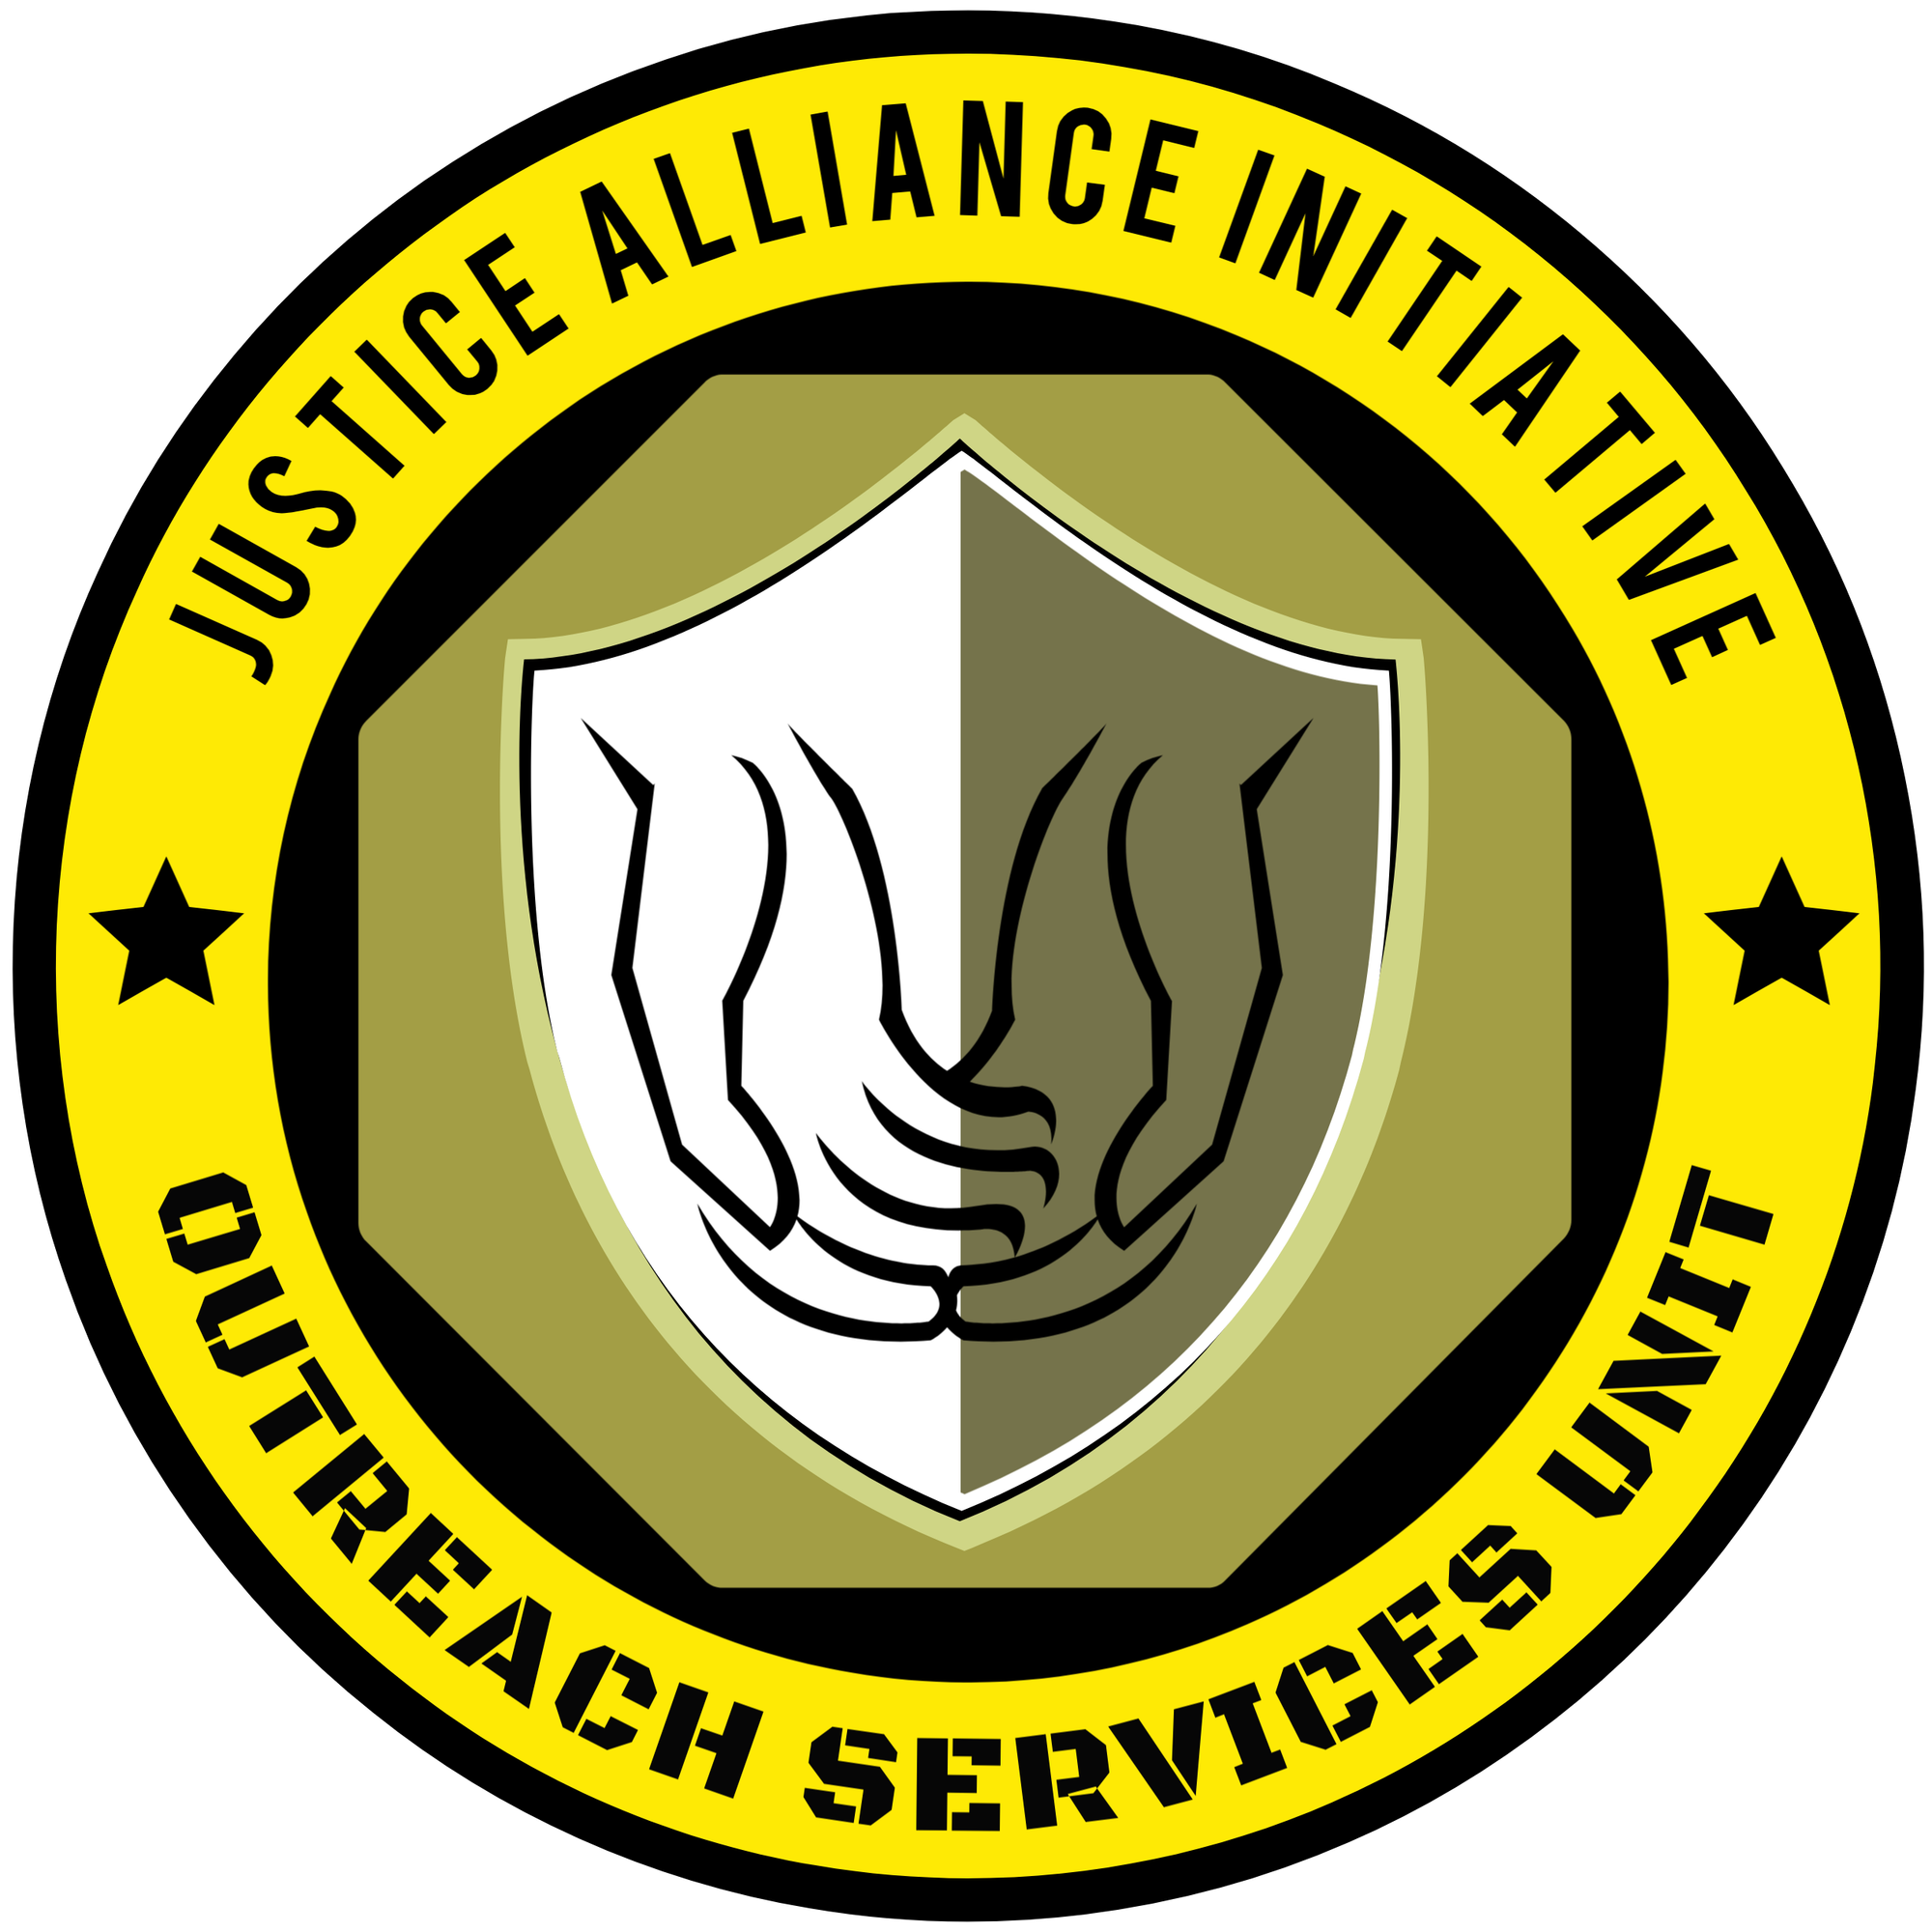 OUTREACH SERVICES UNIT (O.S.U.)